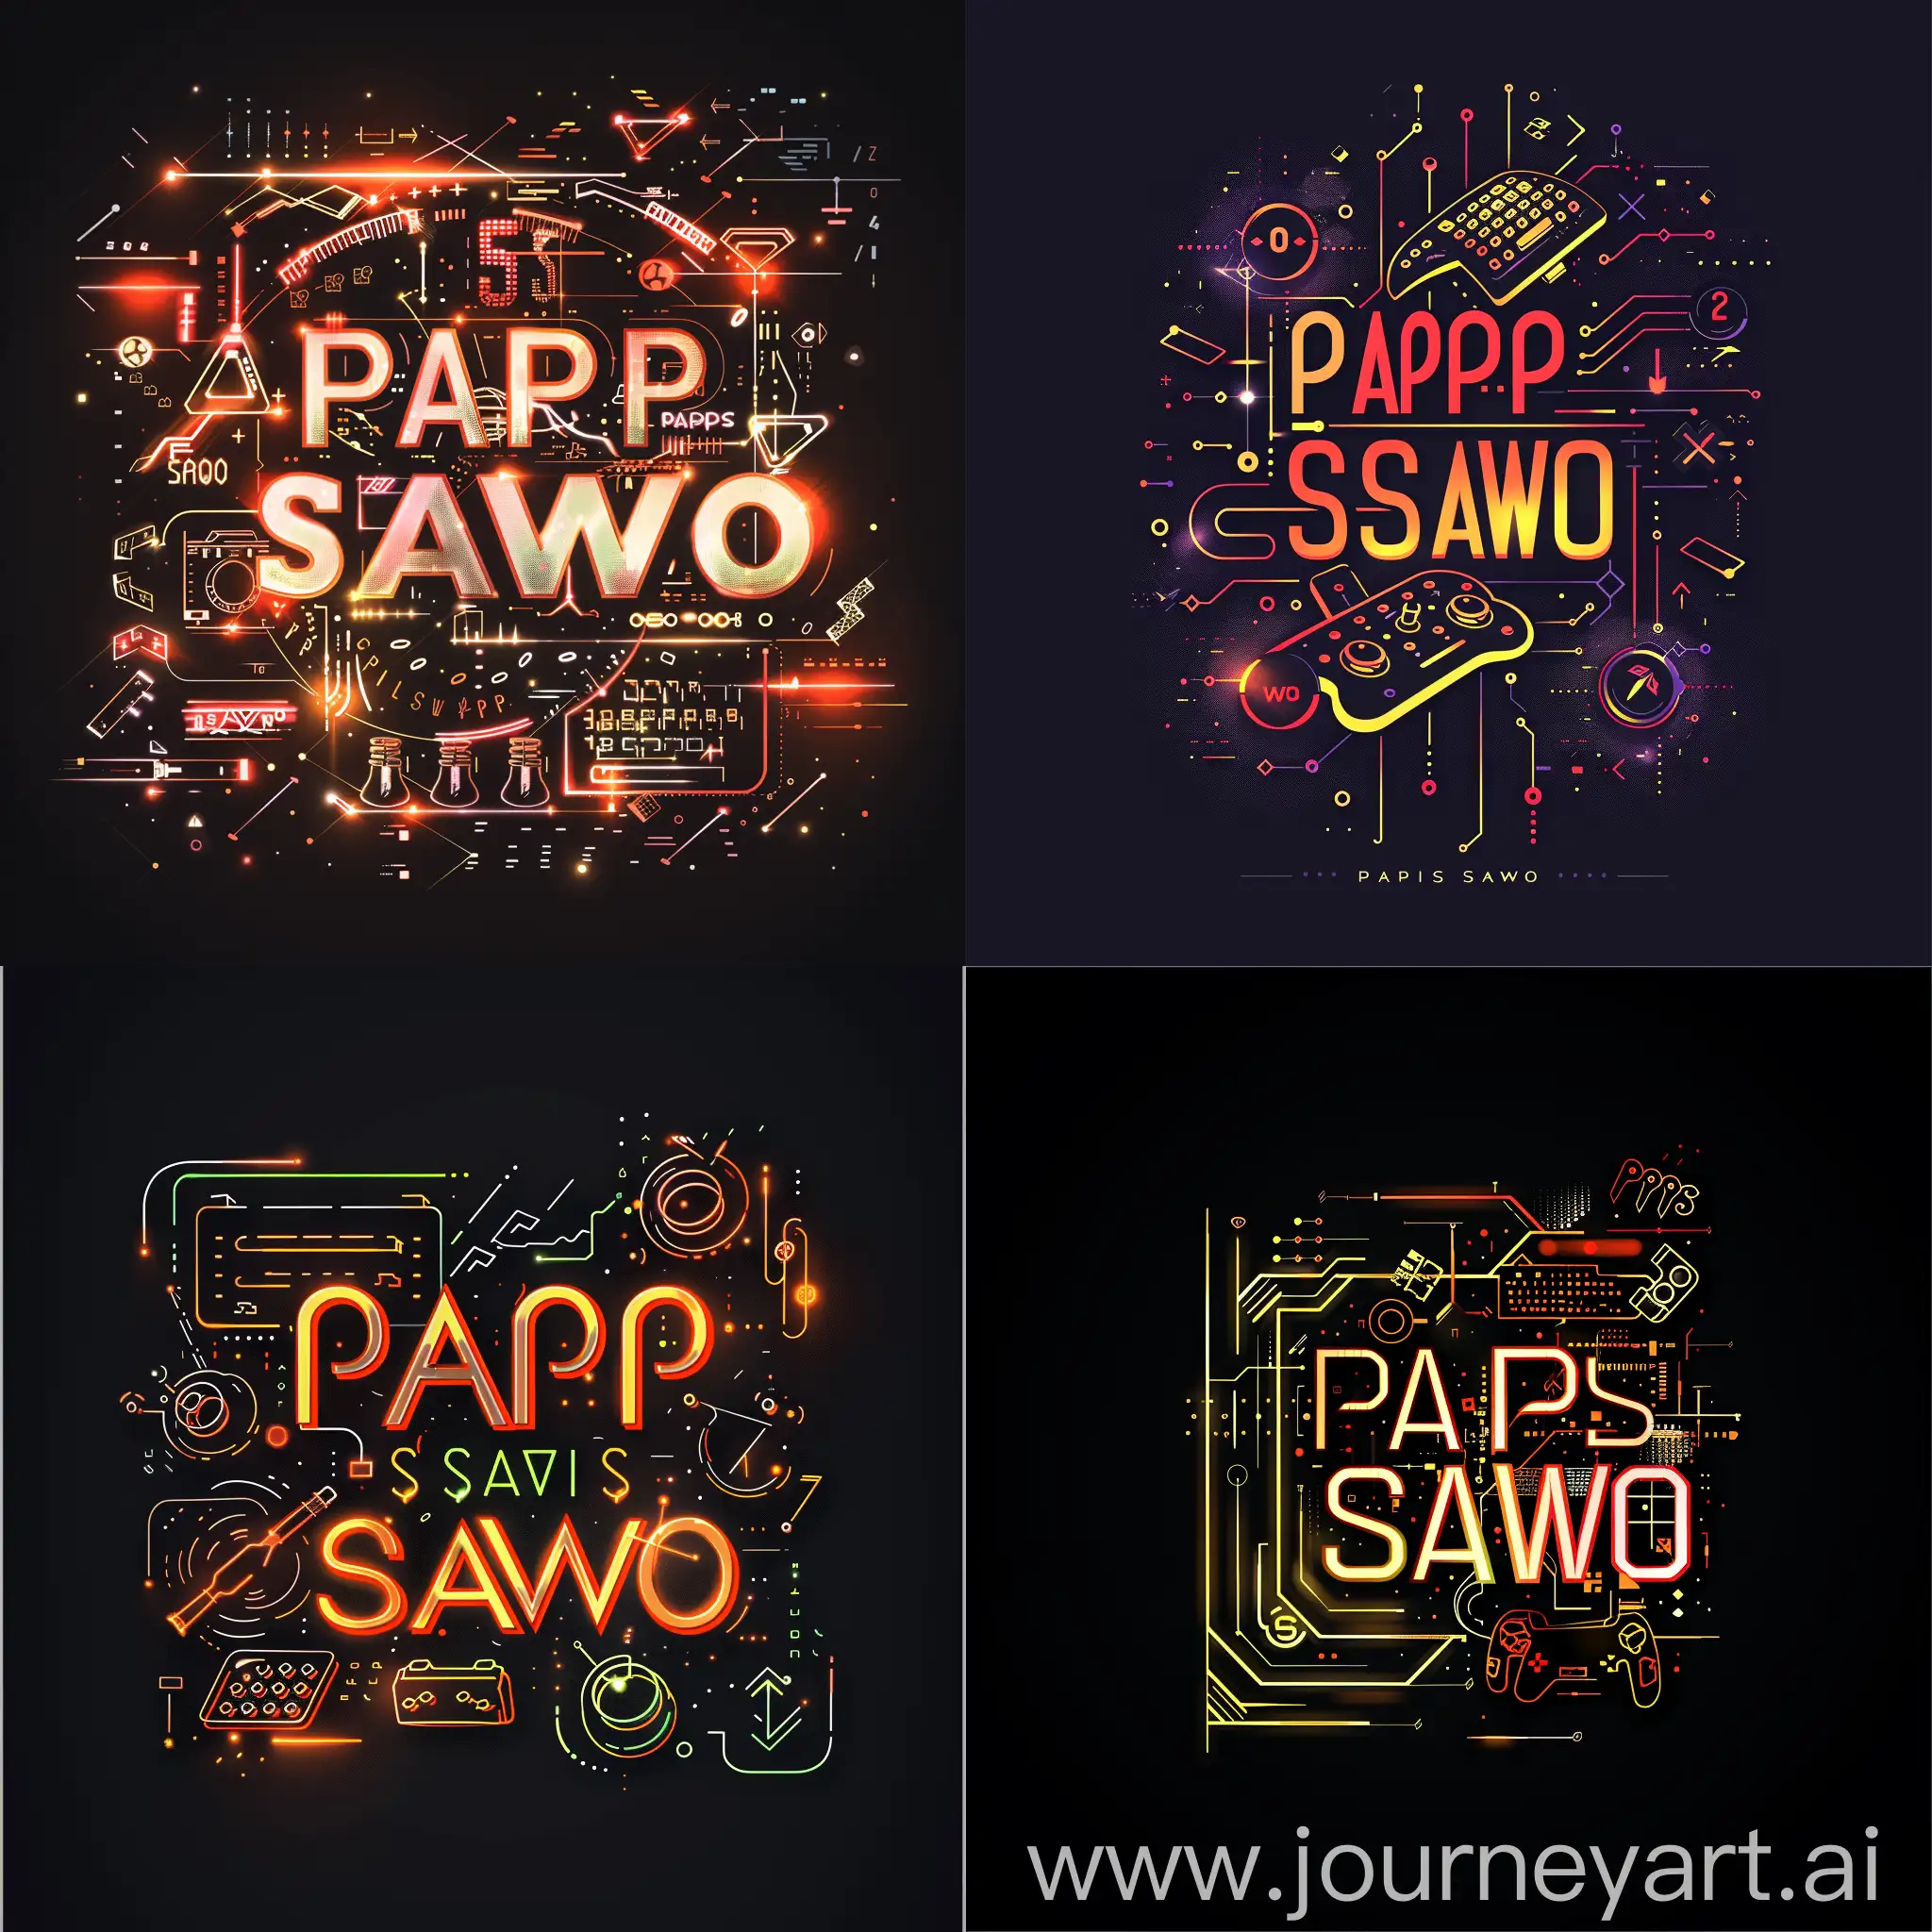 логотип "PAPIS SAWO", стилизованная графика, отображающую энергичный и динамичный образ, элементы технологий и киберспортивной тематики, абстрактные цифры, схемы, контуры геймпадов, контуры клавиатур, эффекты свет и тени которые дают глубину и объем к логотипу, энергичные и контрастные цвета, подчёркивающие динамичность и силу образа